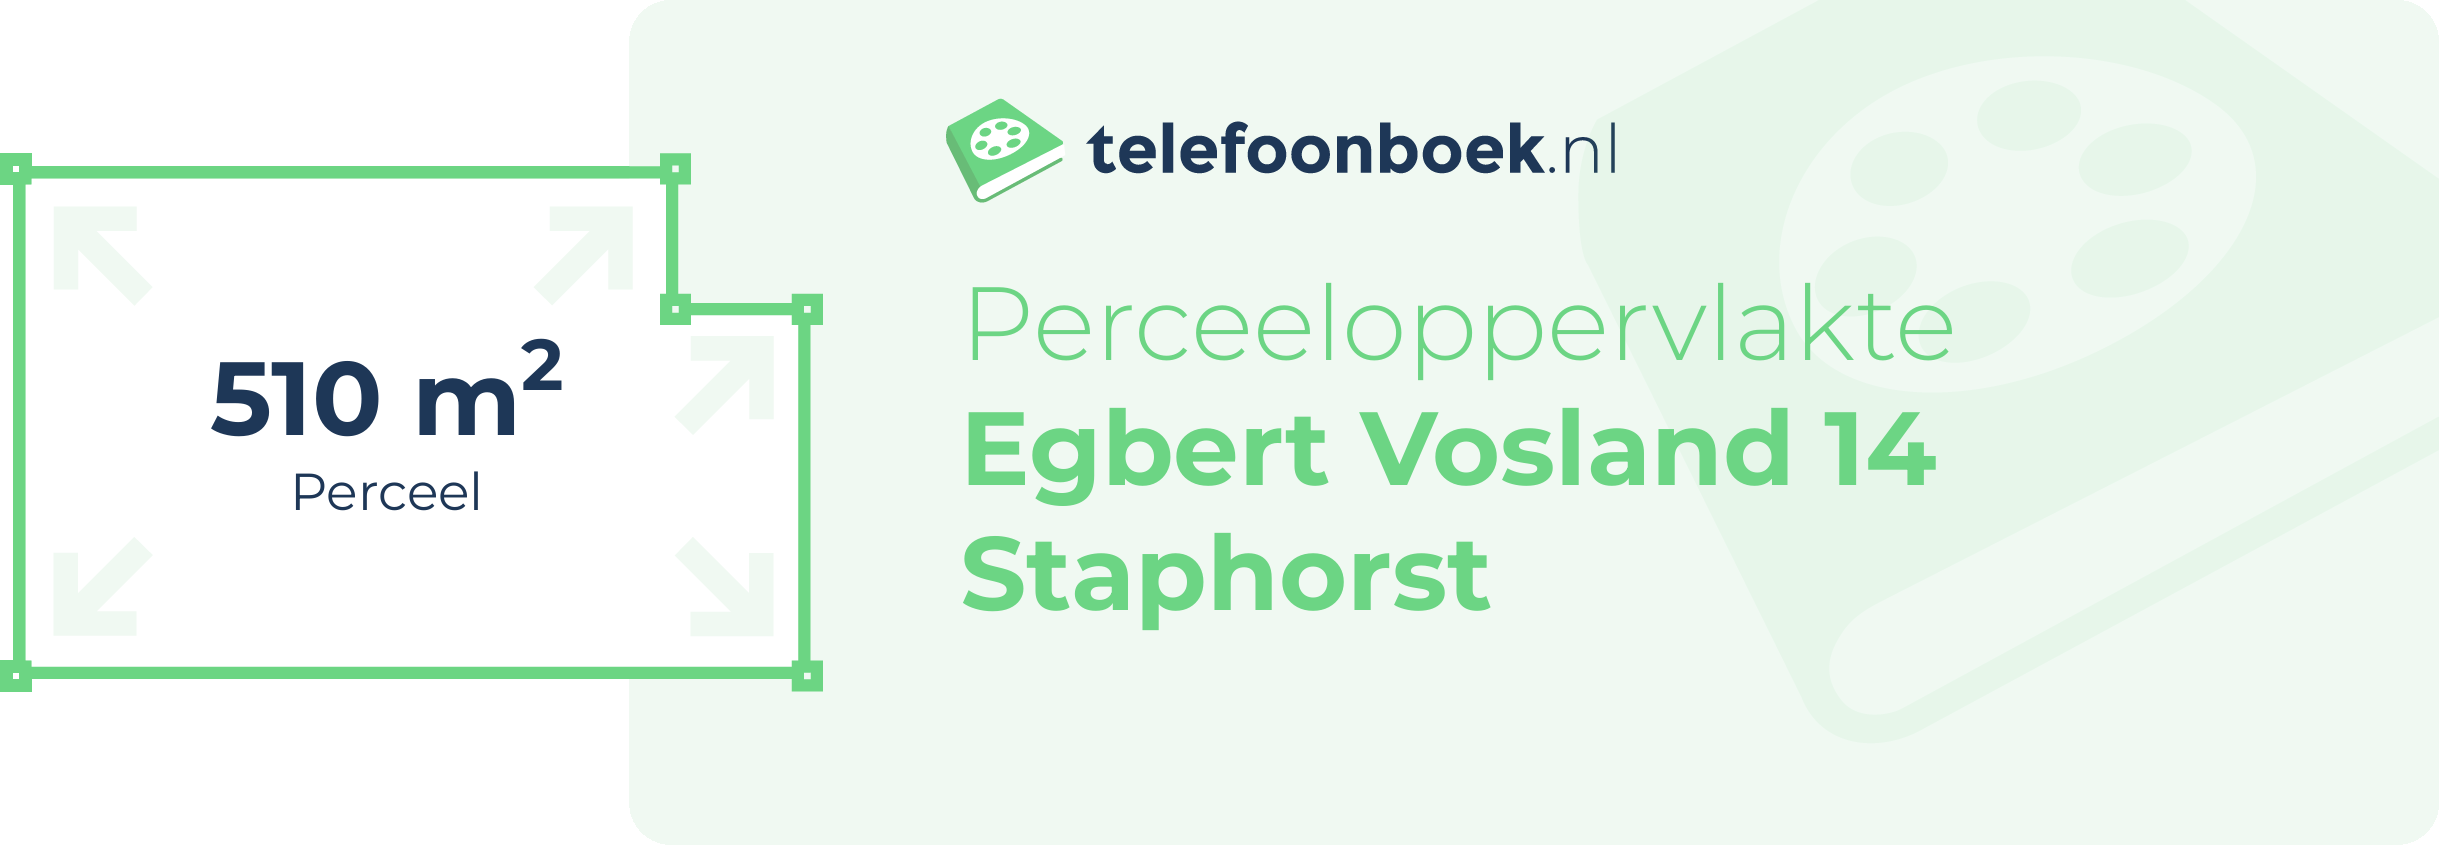 Perceeloppervlakte Egbert Vosland 14 Staphorst